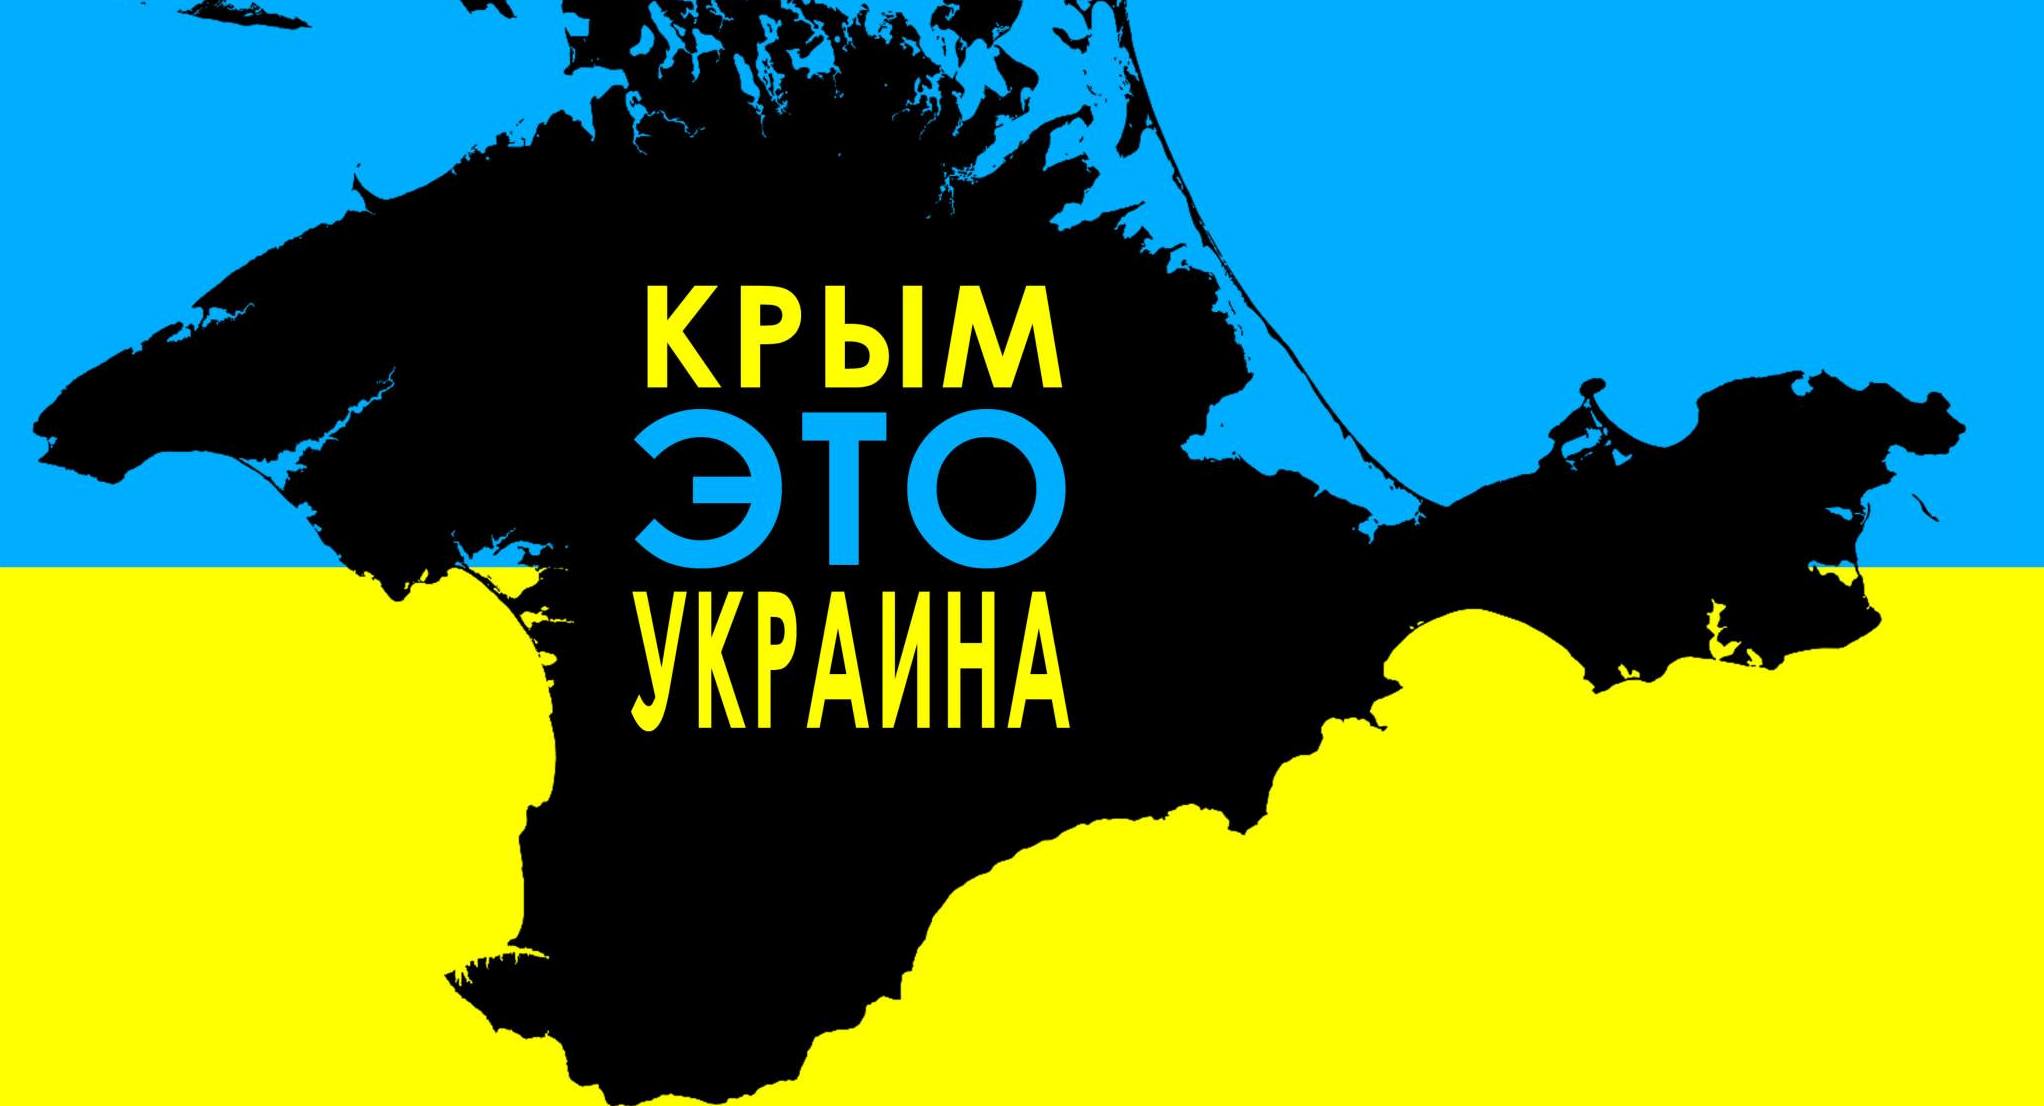 Казахстан сдался под натиском: во всех учебниках страны Крым признан частью Украины, которую преступно аннексировала Россия